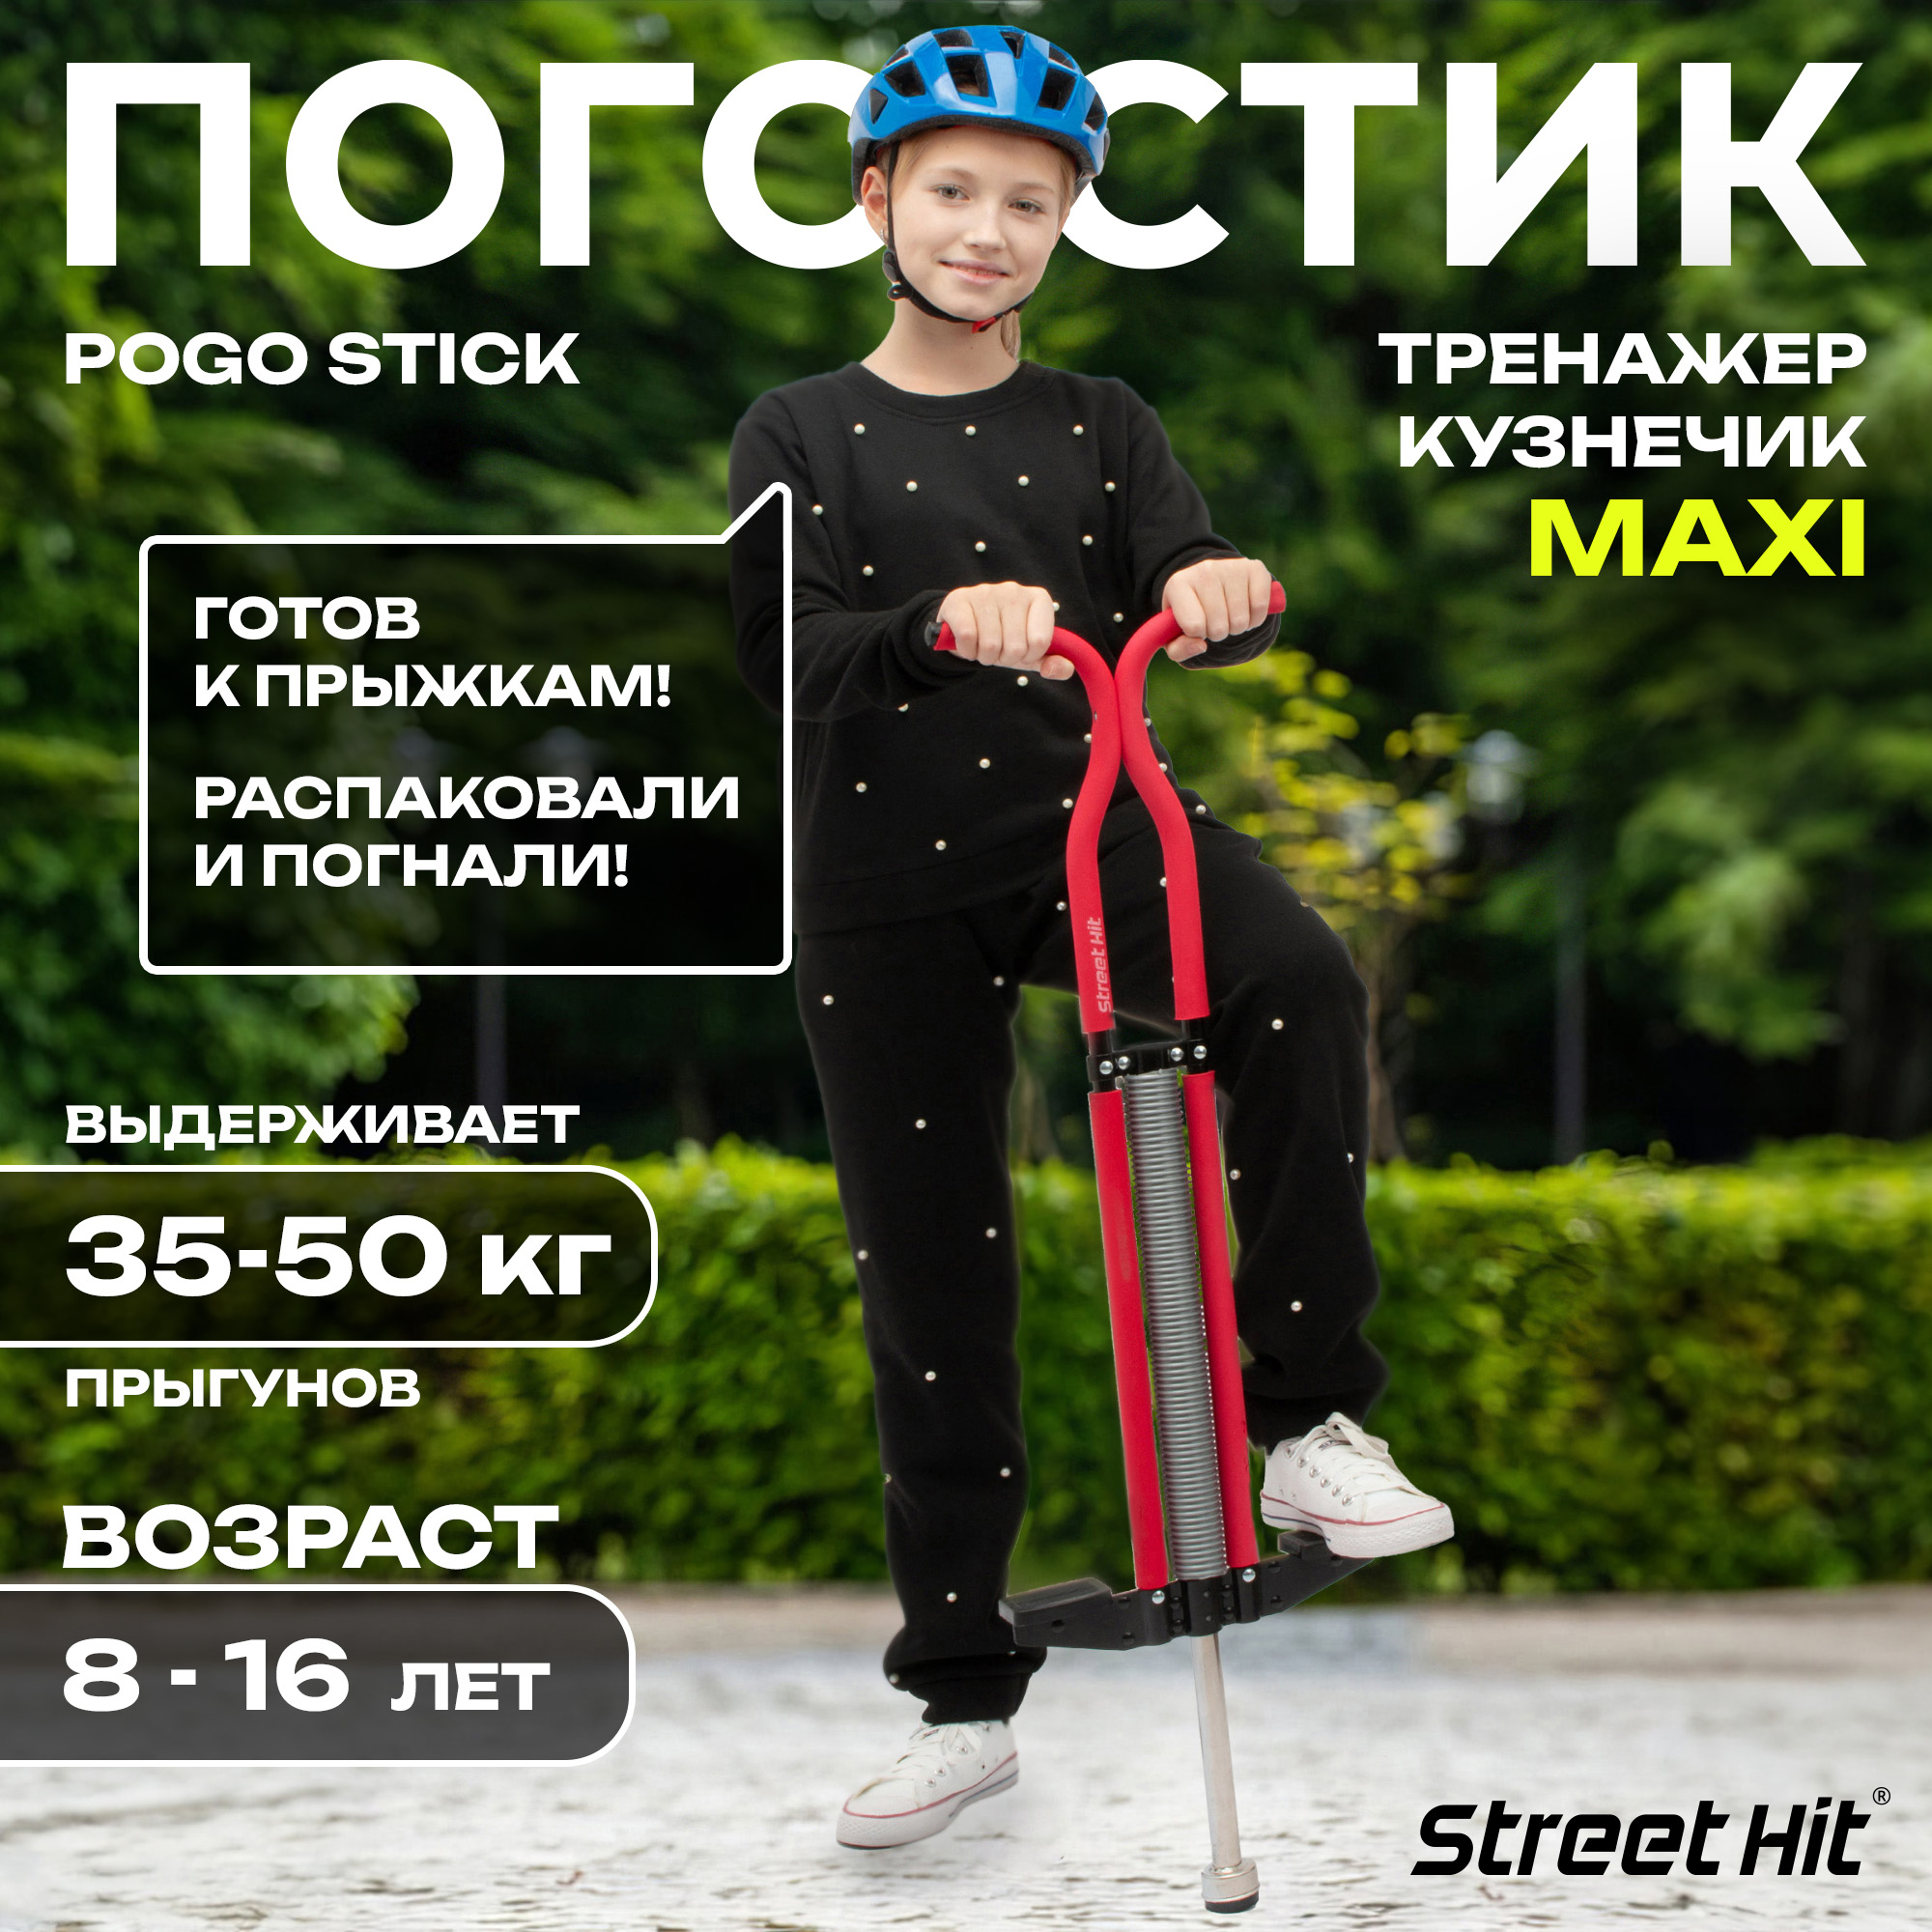 Тренажер-кузнечик Street Hit Pogo Stick Maxi до 50 кг Красный - фото 1